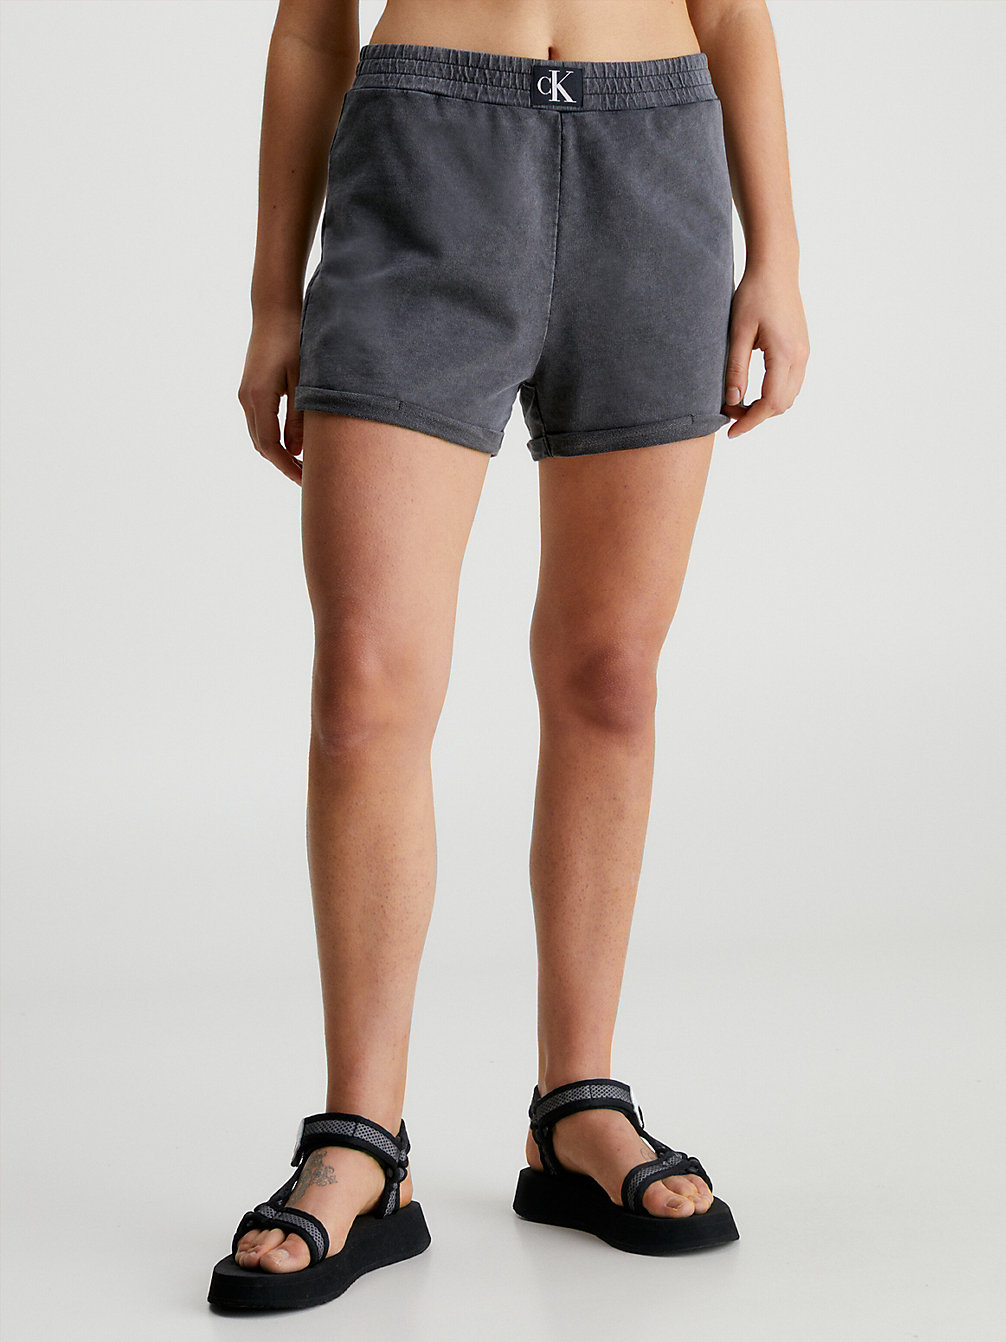 PVH BLACK Beach Shorts - CK Authentic undefined women Calvin Klein